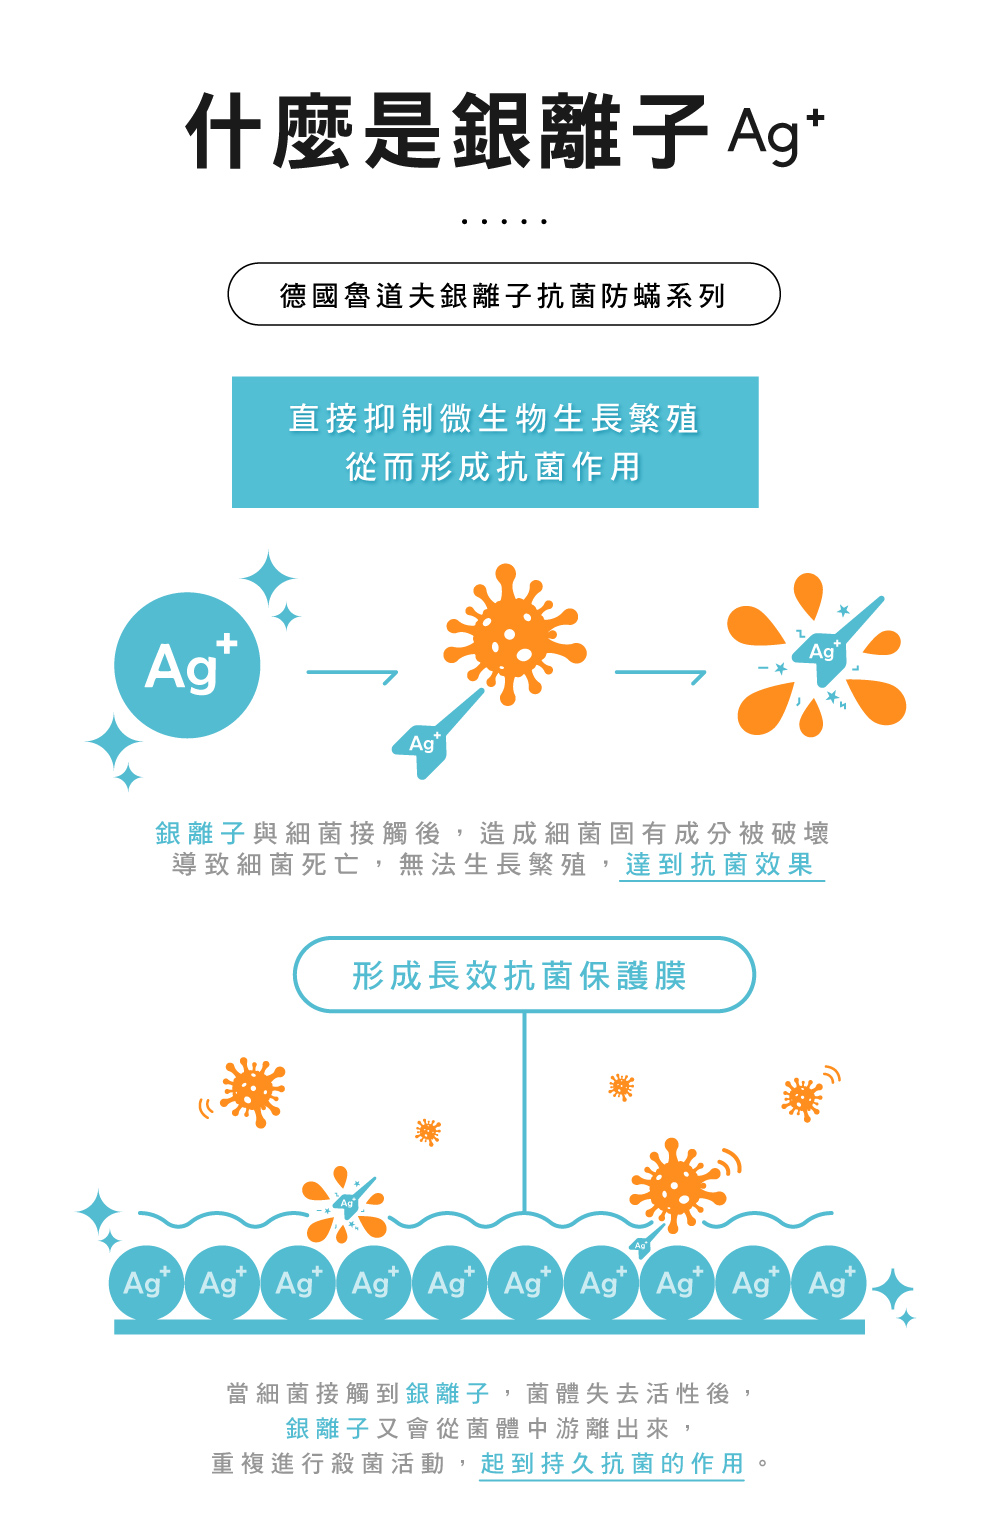 台灣製銀離子抗菌防蟎可水洗兩用被床包組 單人/雙人/加大均一價 夏天涼被 床單